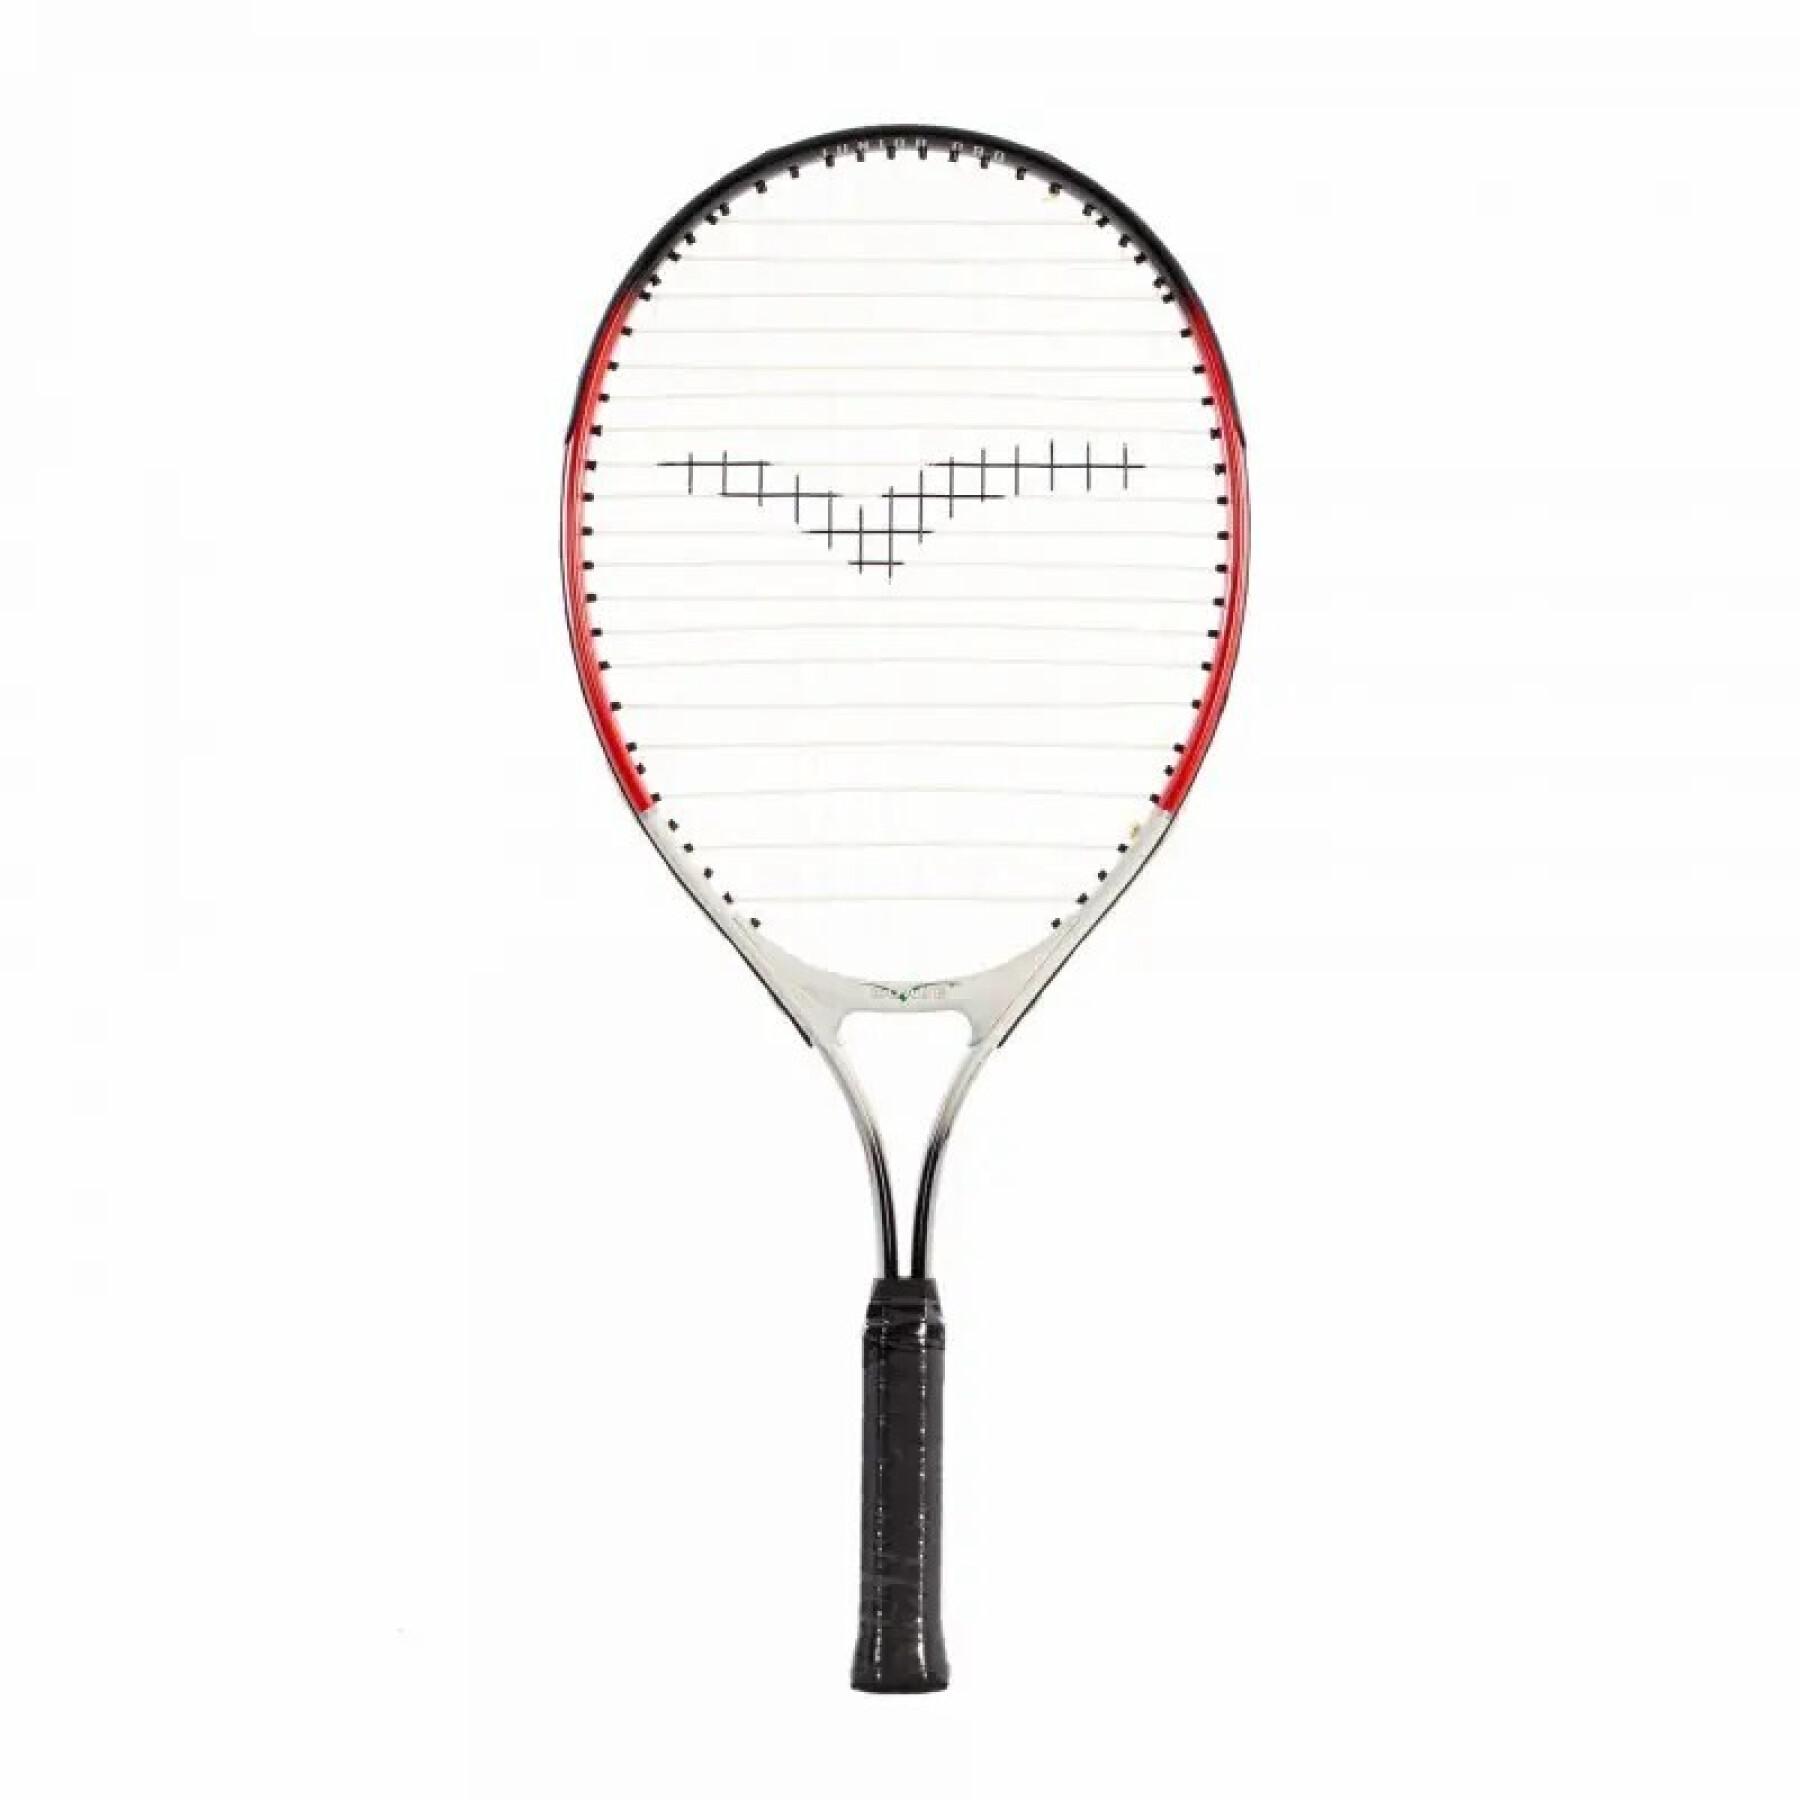 La raqueta de tenis de aluminio incluye una funda Softee 23"